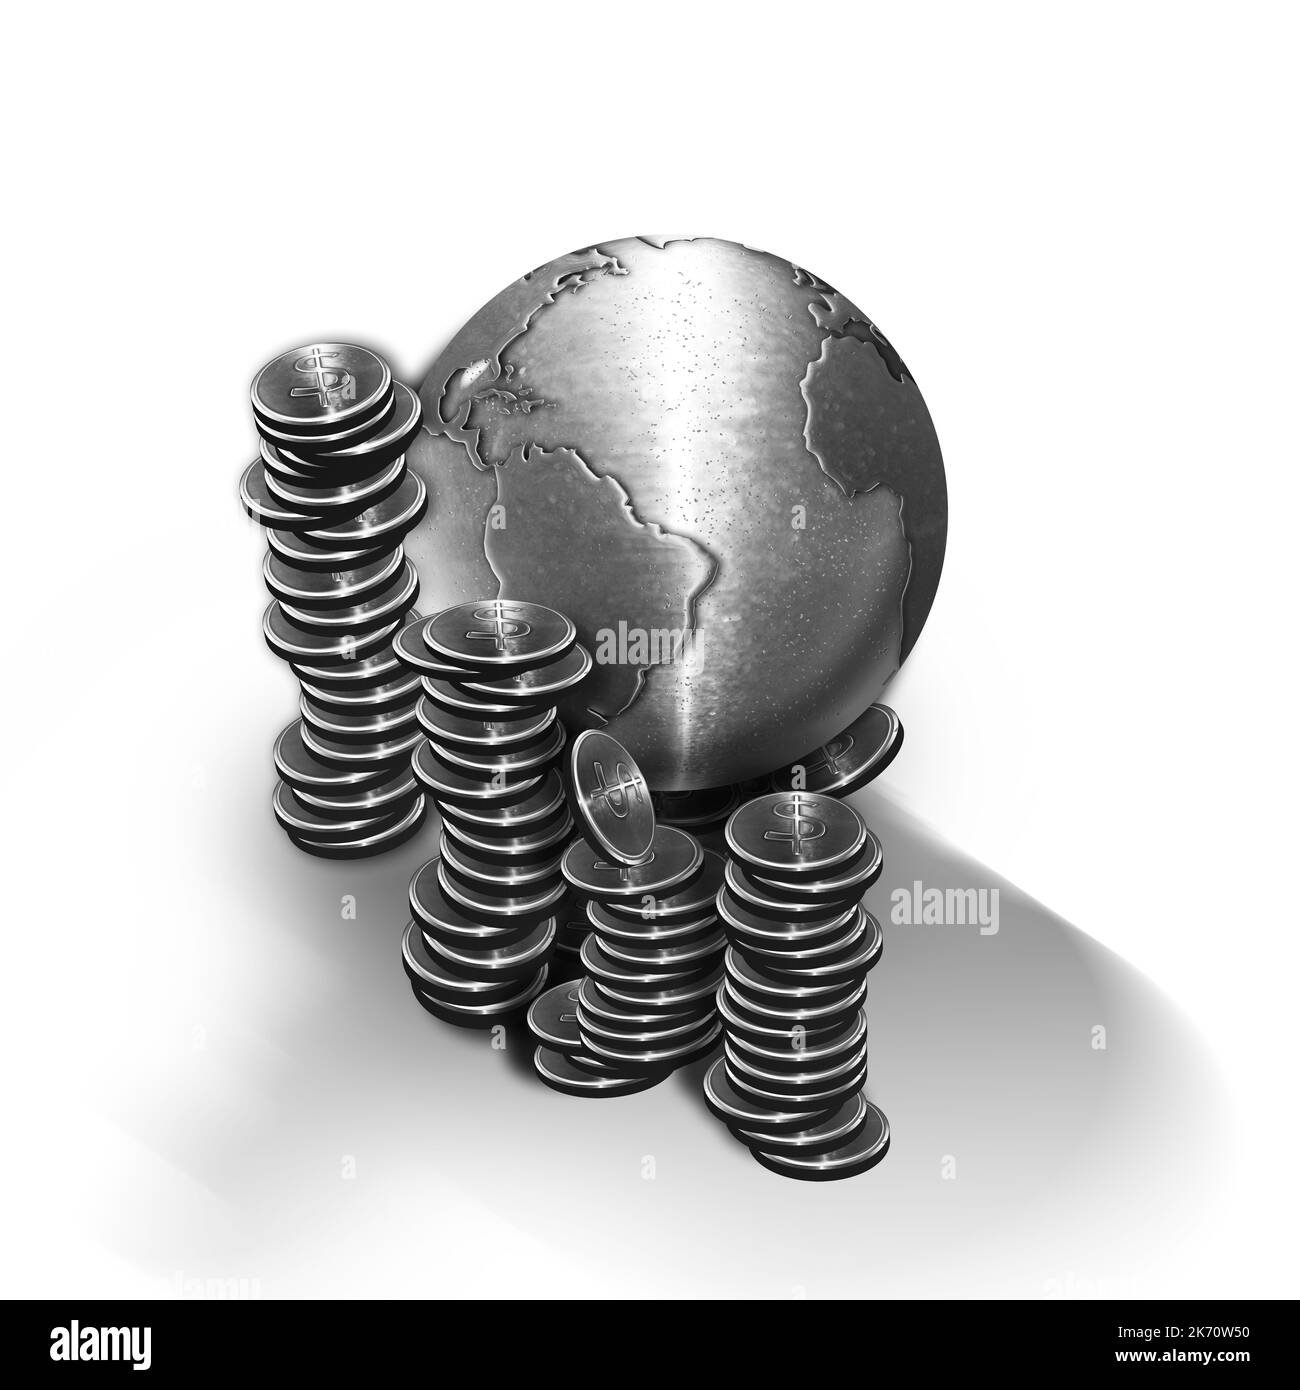 3d illustration globe terrestre en métal avec pièces de monnaie autour de lui bourse Banque D'Images